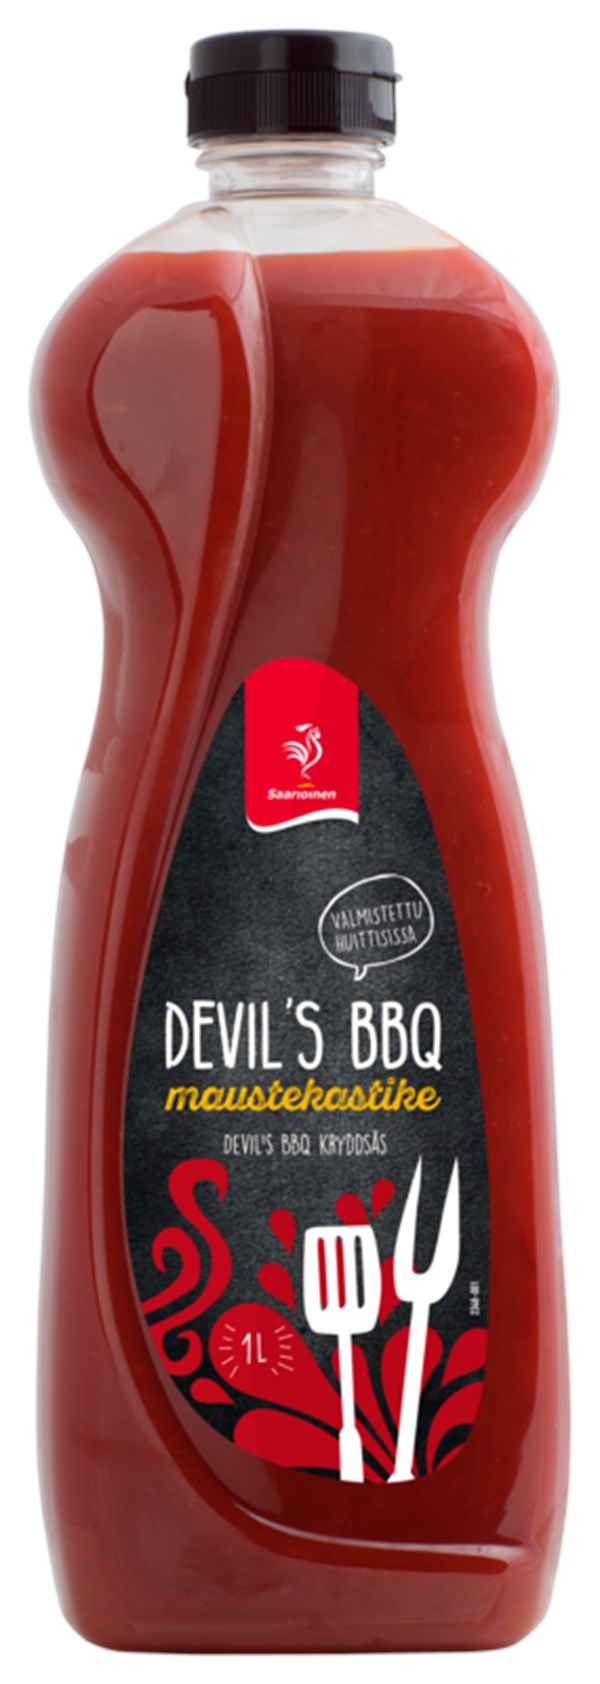 Devil's BBQ maustekastike 6 x 1 L